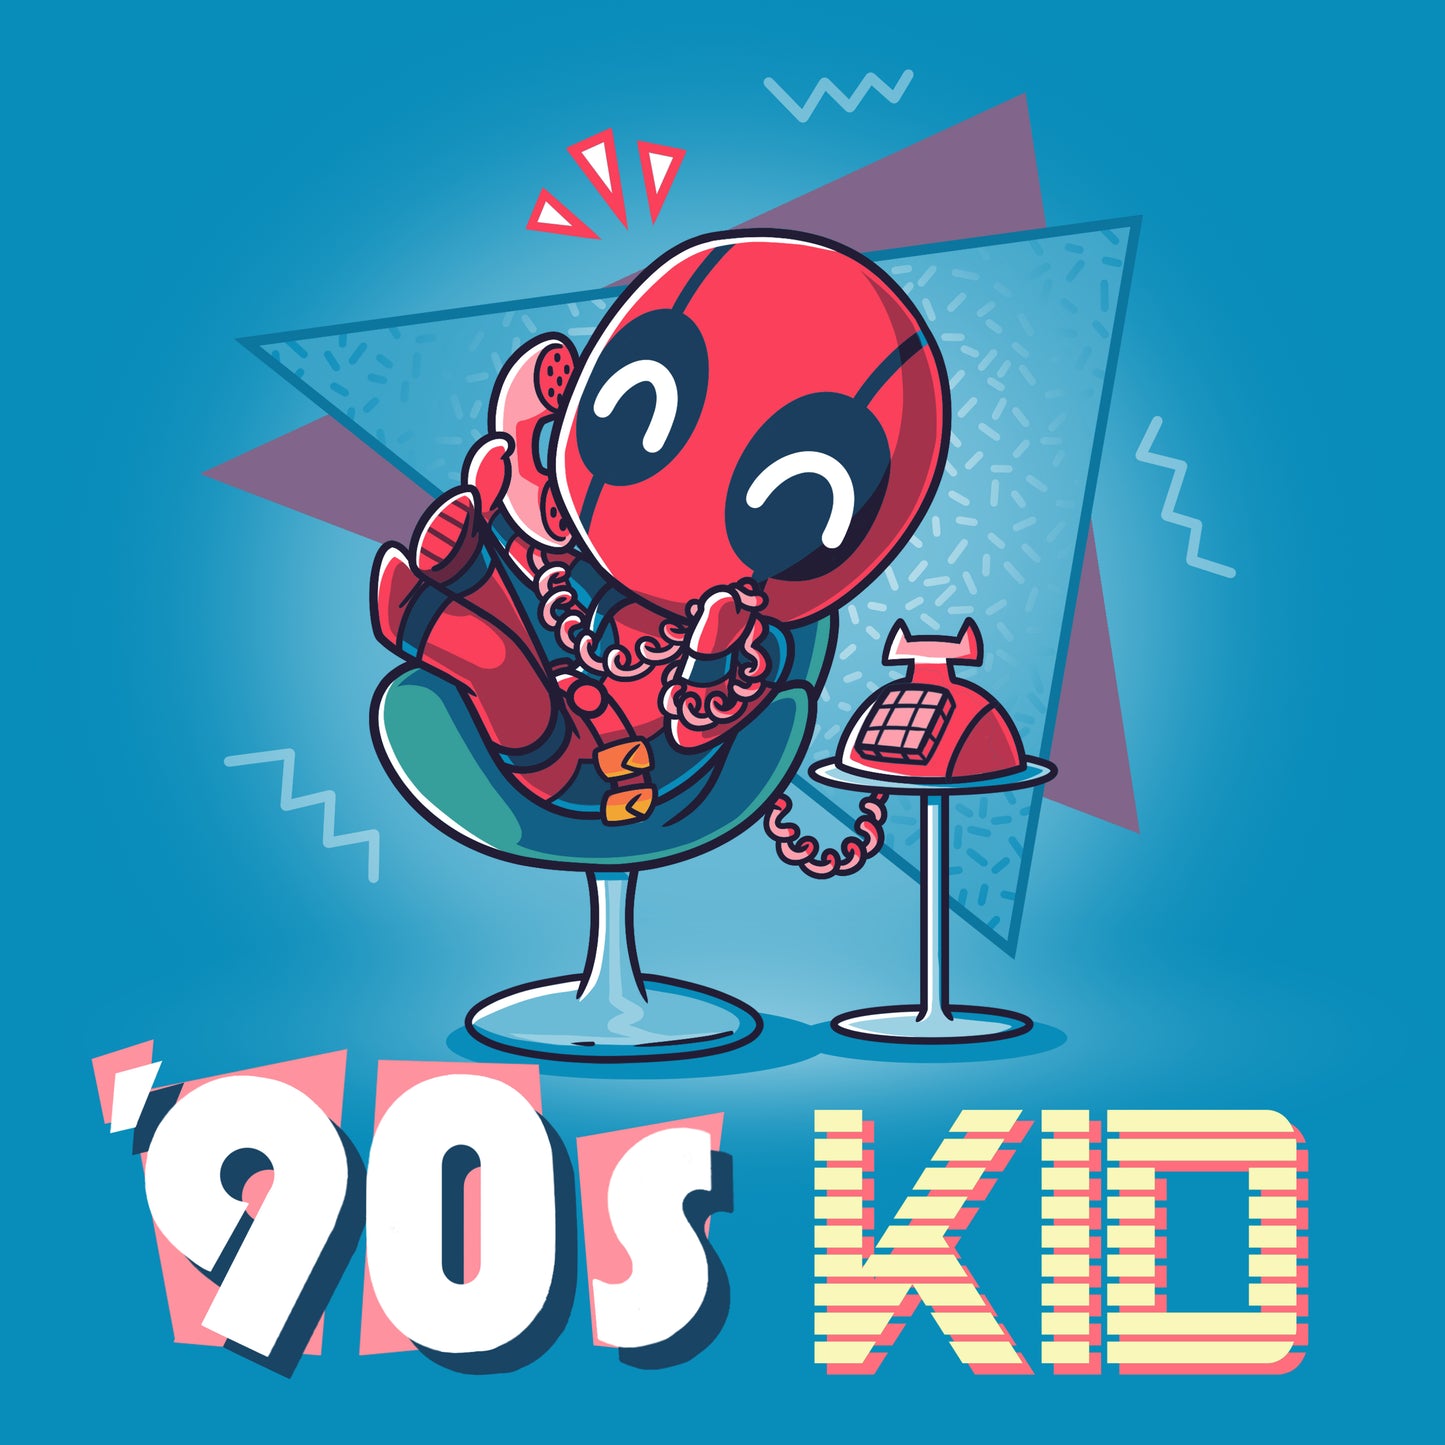 Officially licensed Marvel Deadpool '90s Kid t-shirt.